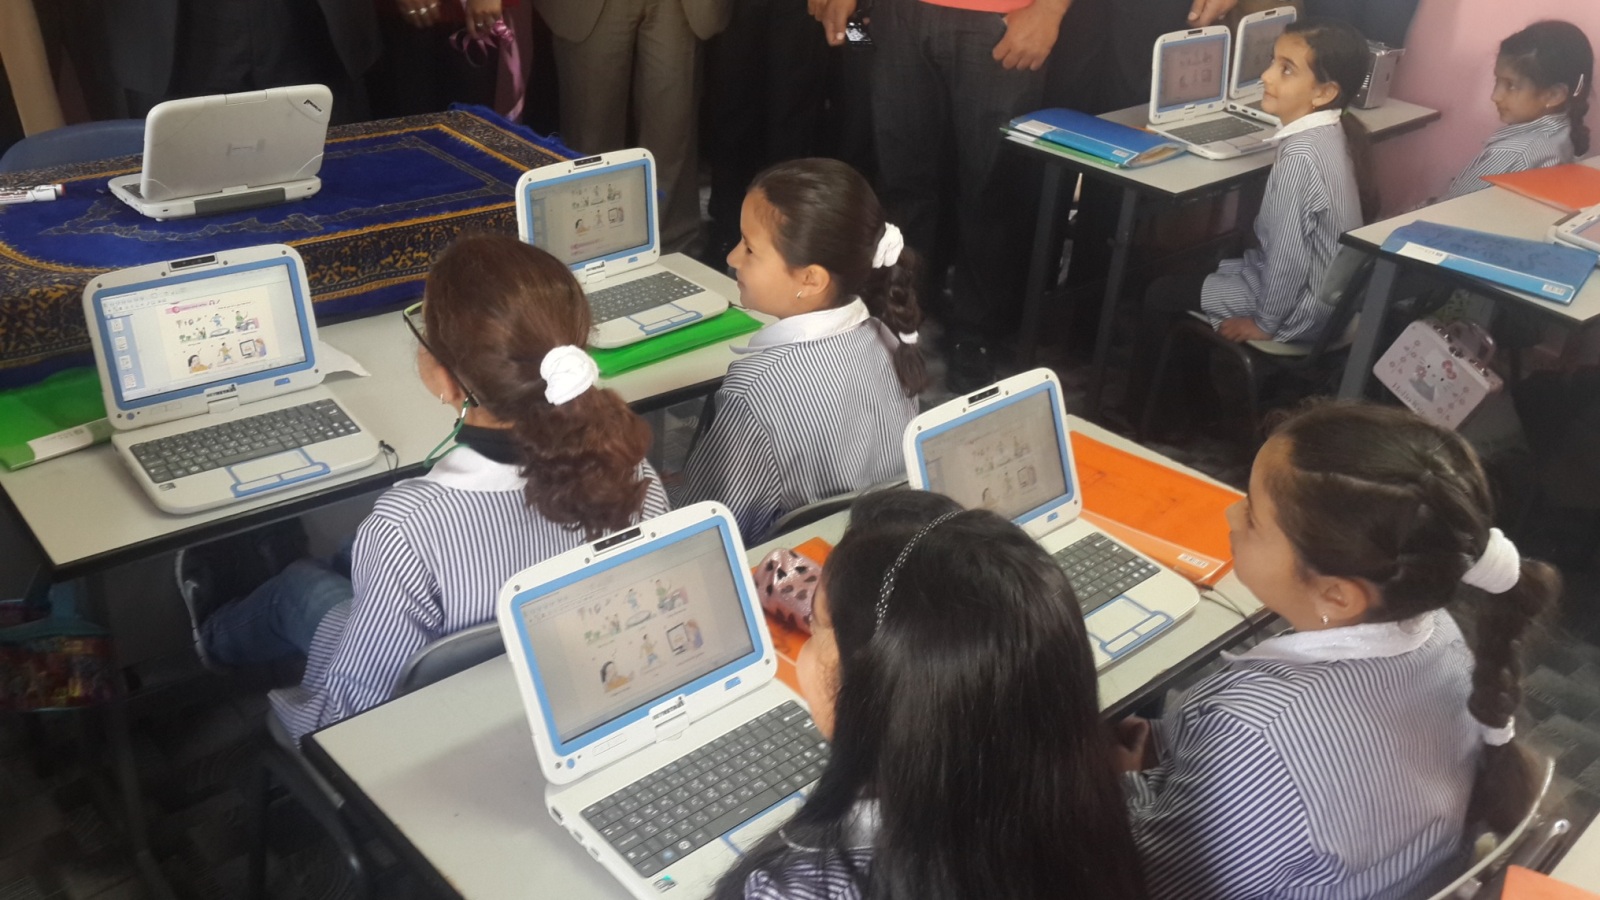 الصف الإلكتروني في مدرسة بنات الياسر في بلدة دير دبوا شرق رام الله (الجزيرة)